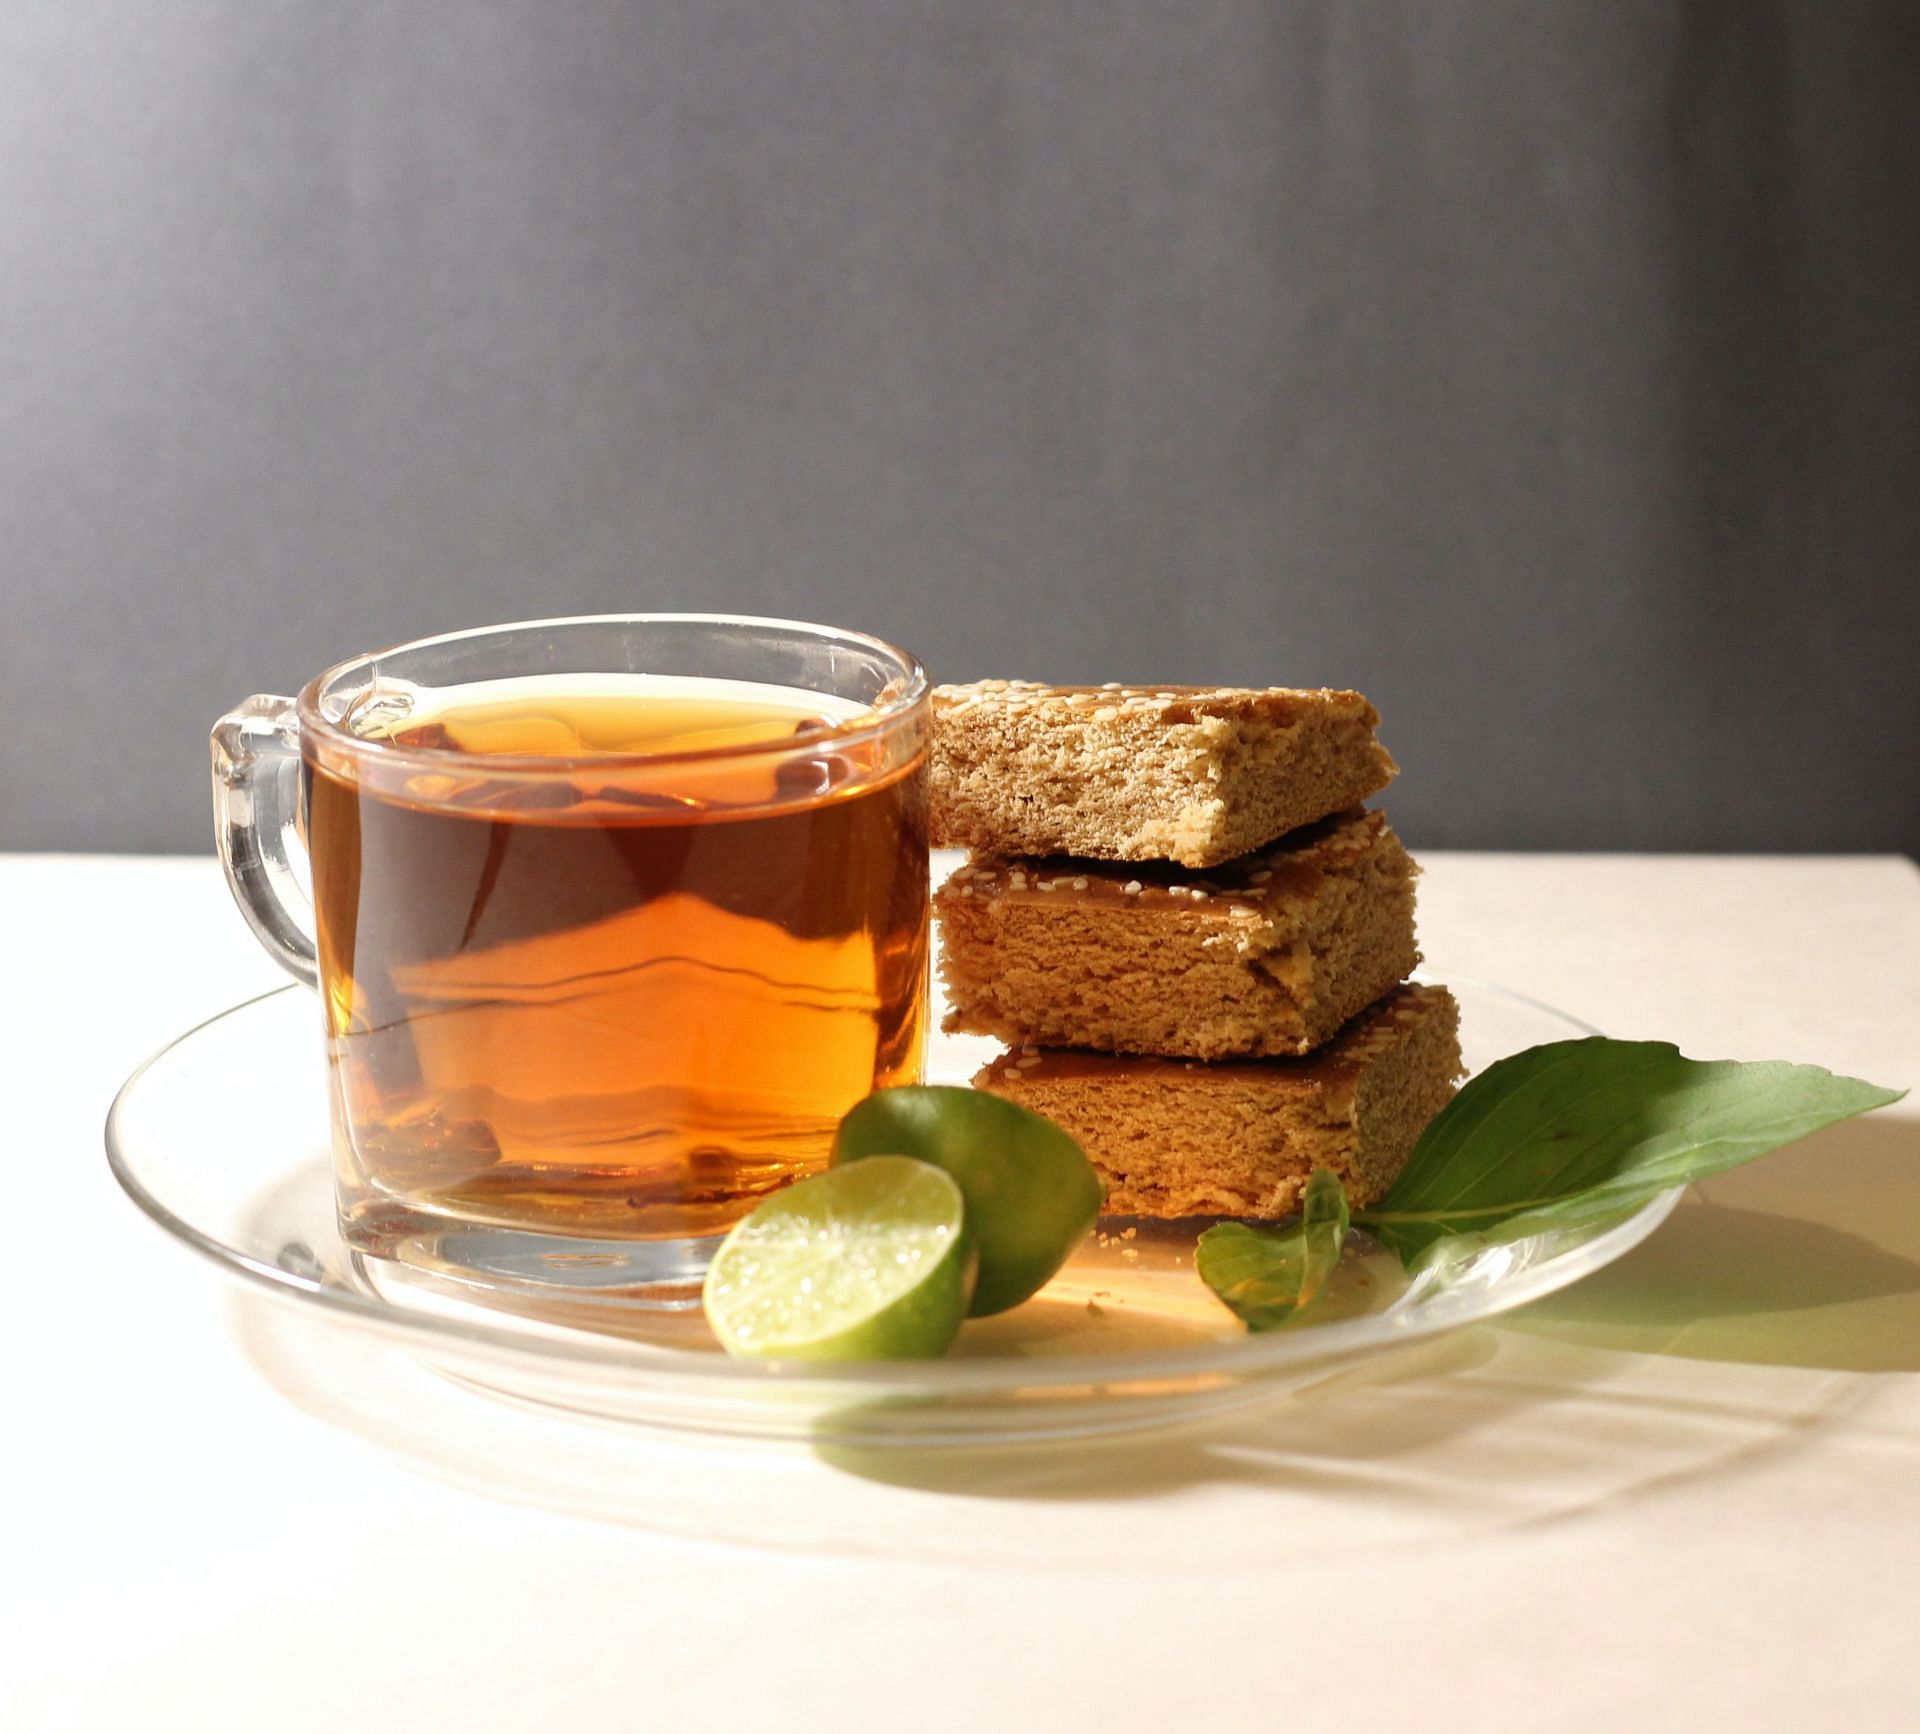 chamomile tea improves your sleep. (Image via Unsplash/ Reyhaneh Mehmejad)